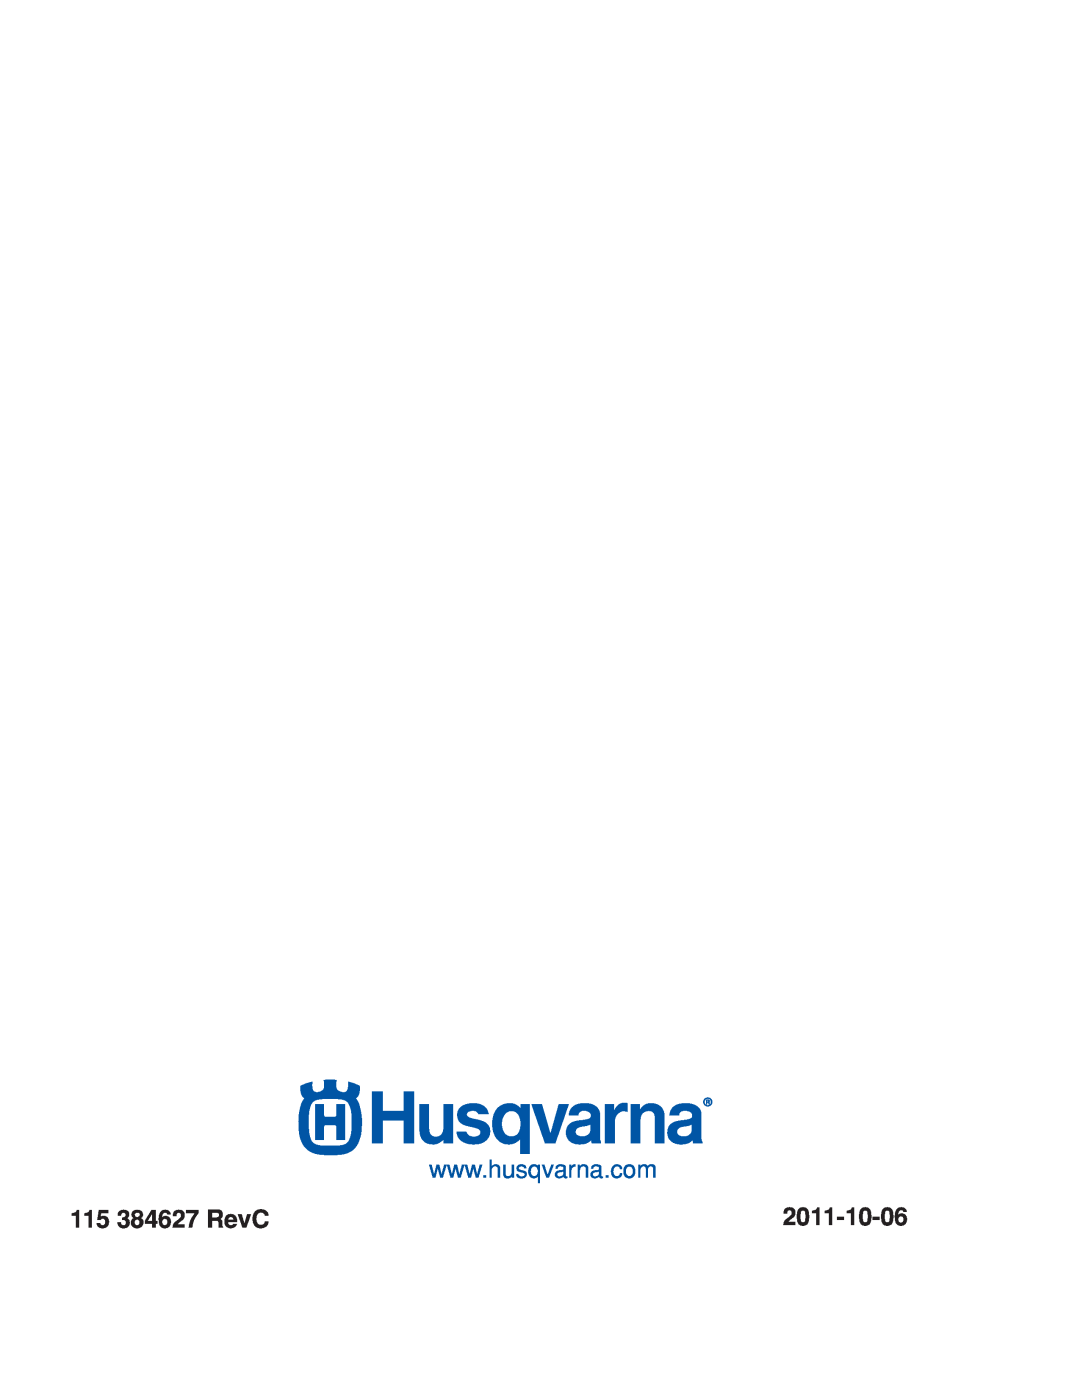 Husqvarna EZ4824/ 966612901, EZ24T/ 966659601, EZ4824 CA/ 966659501 warranty 115 384627 RevC, 2011-10-06 